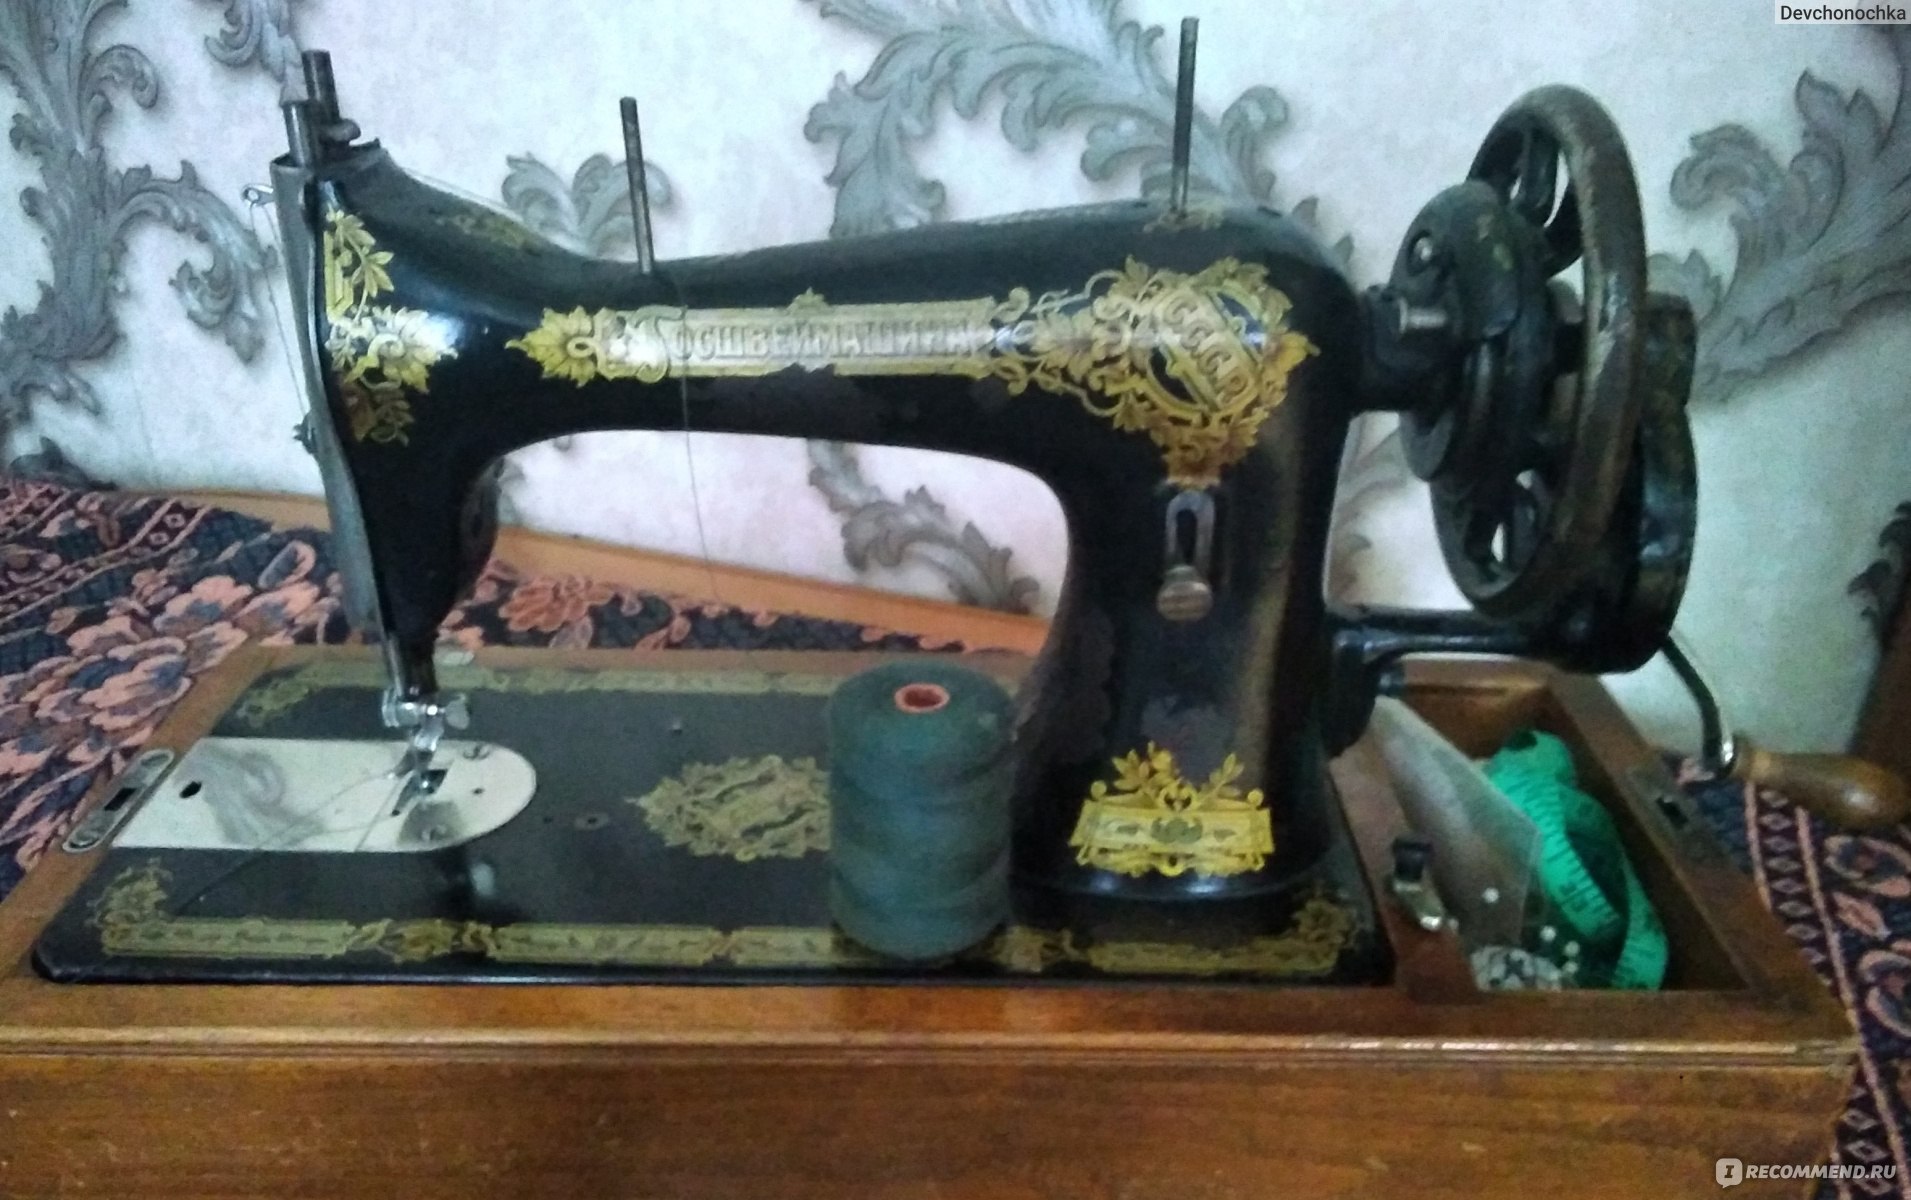 Устройство и ремонт швейных машин Подольск